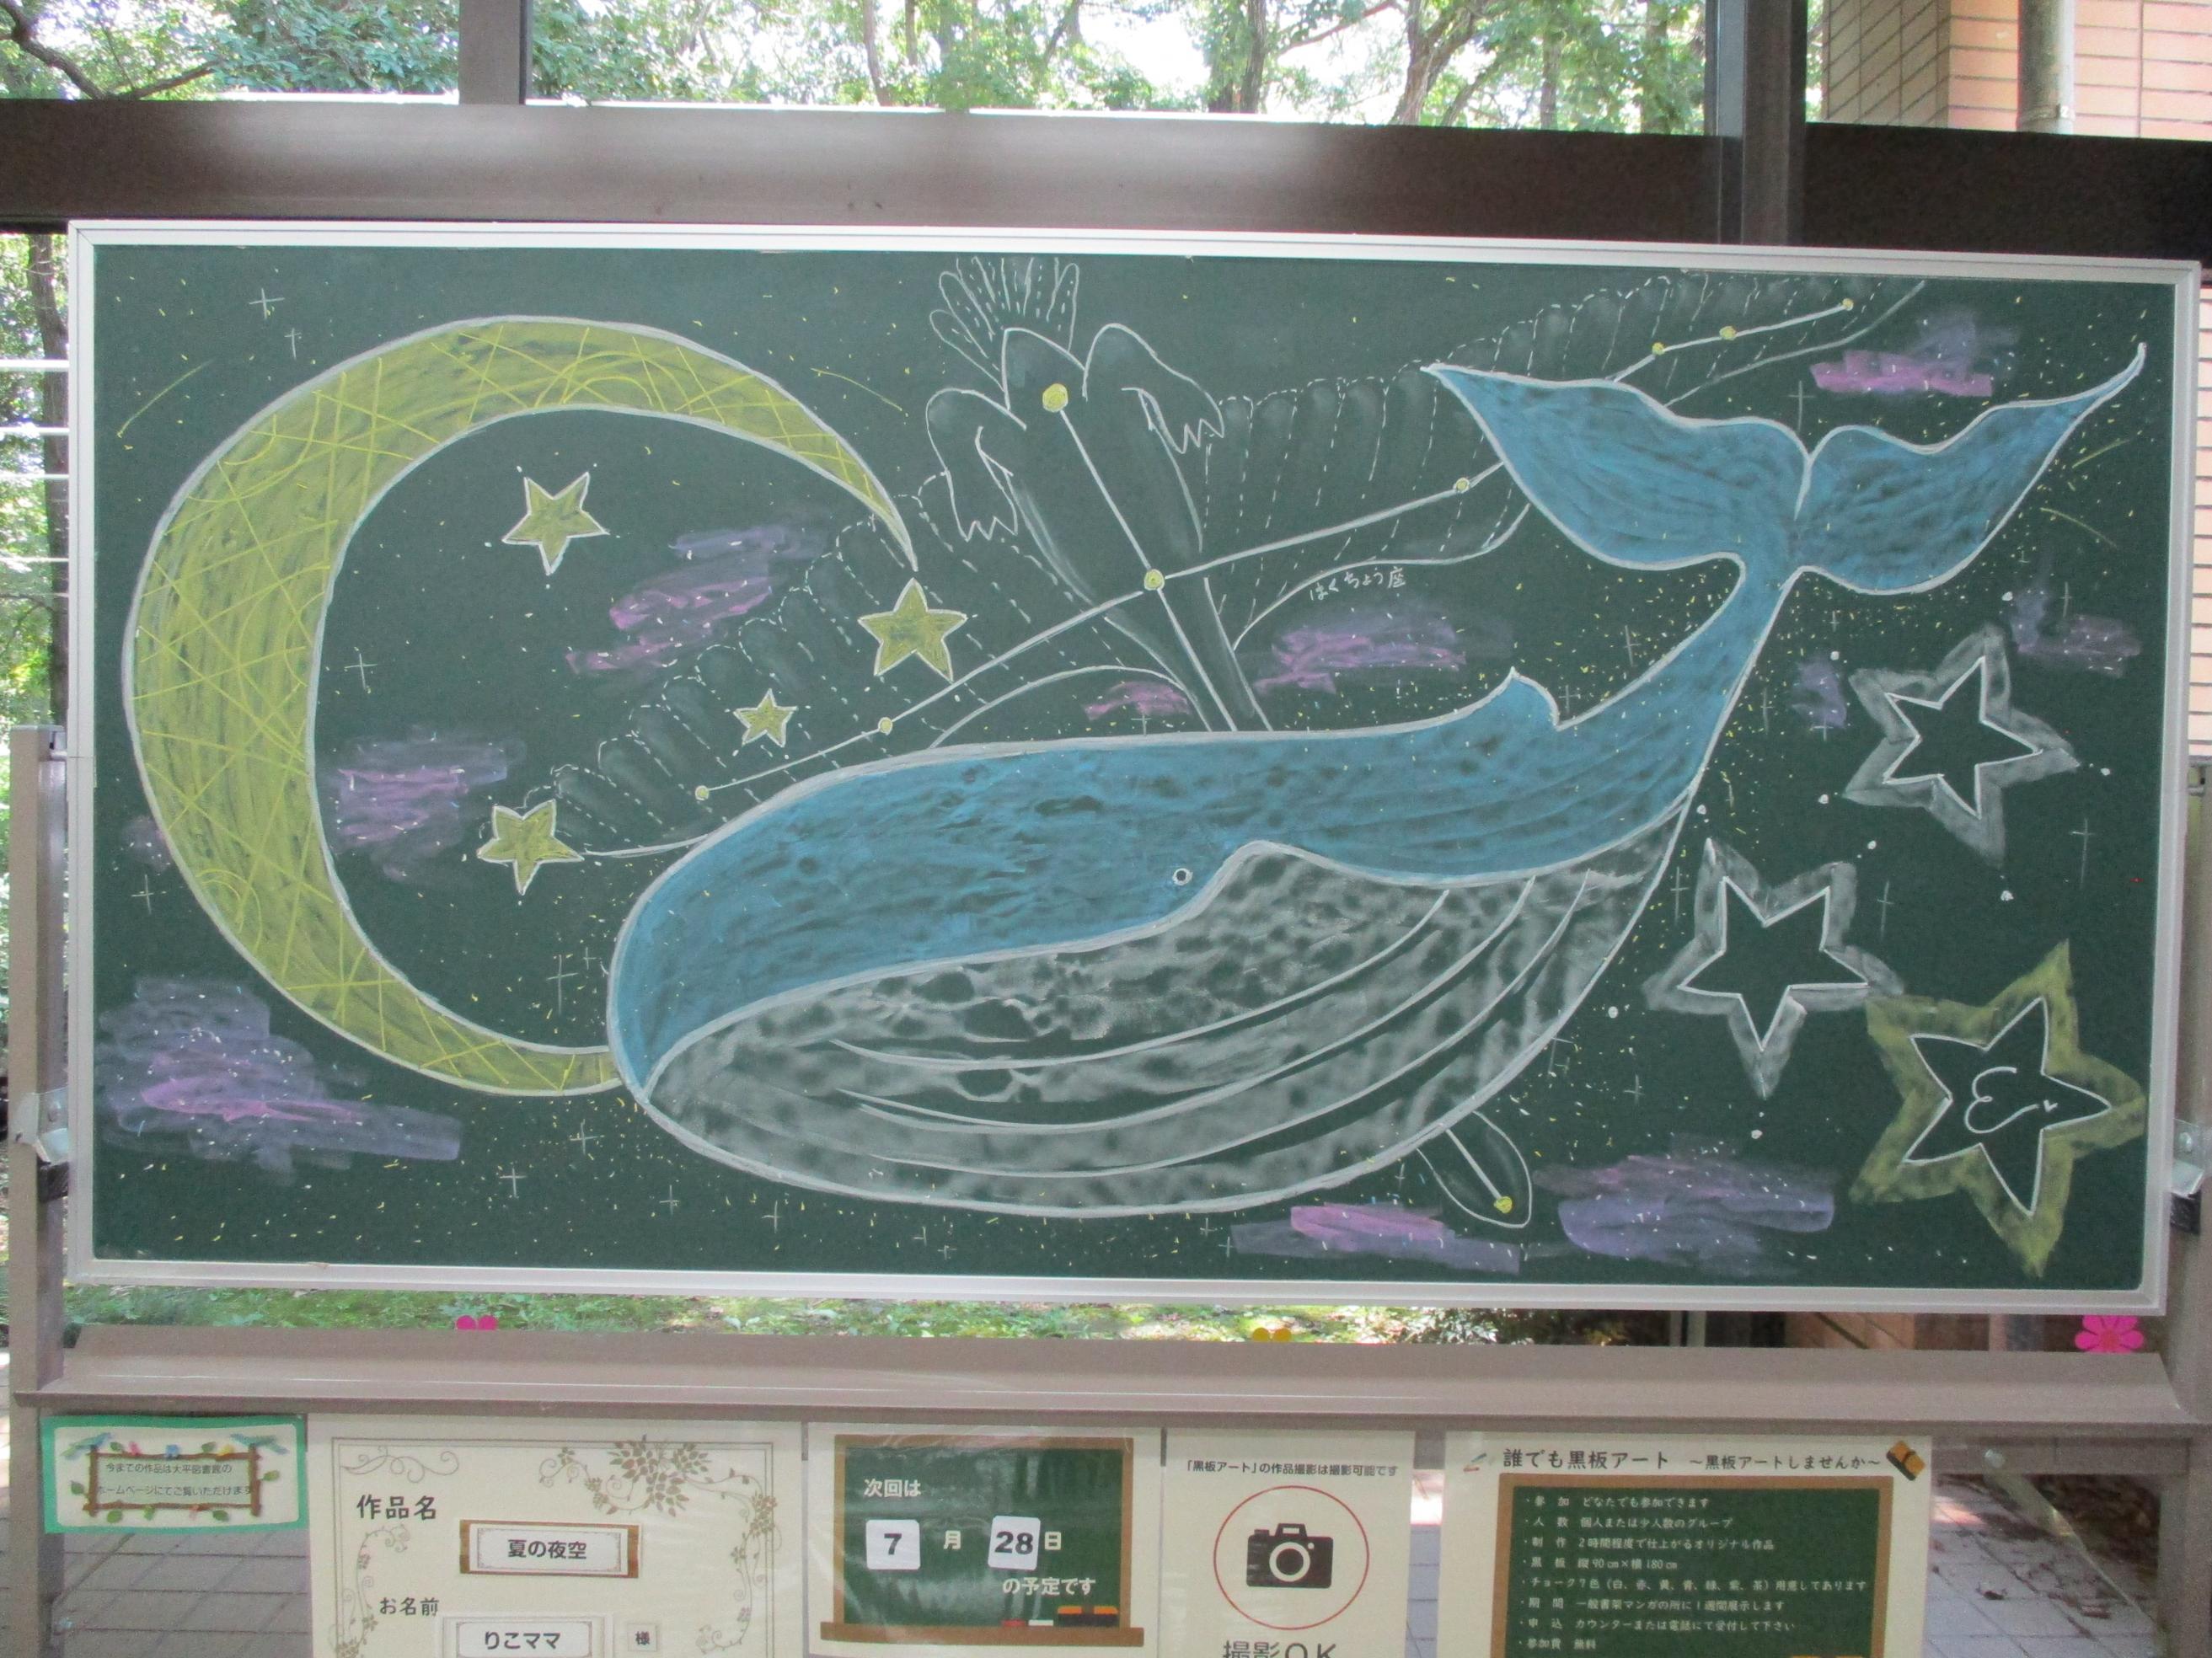 「夏の夜空／りこママ様」黒板アート作品の写真